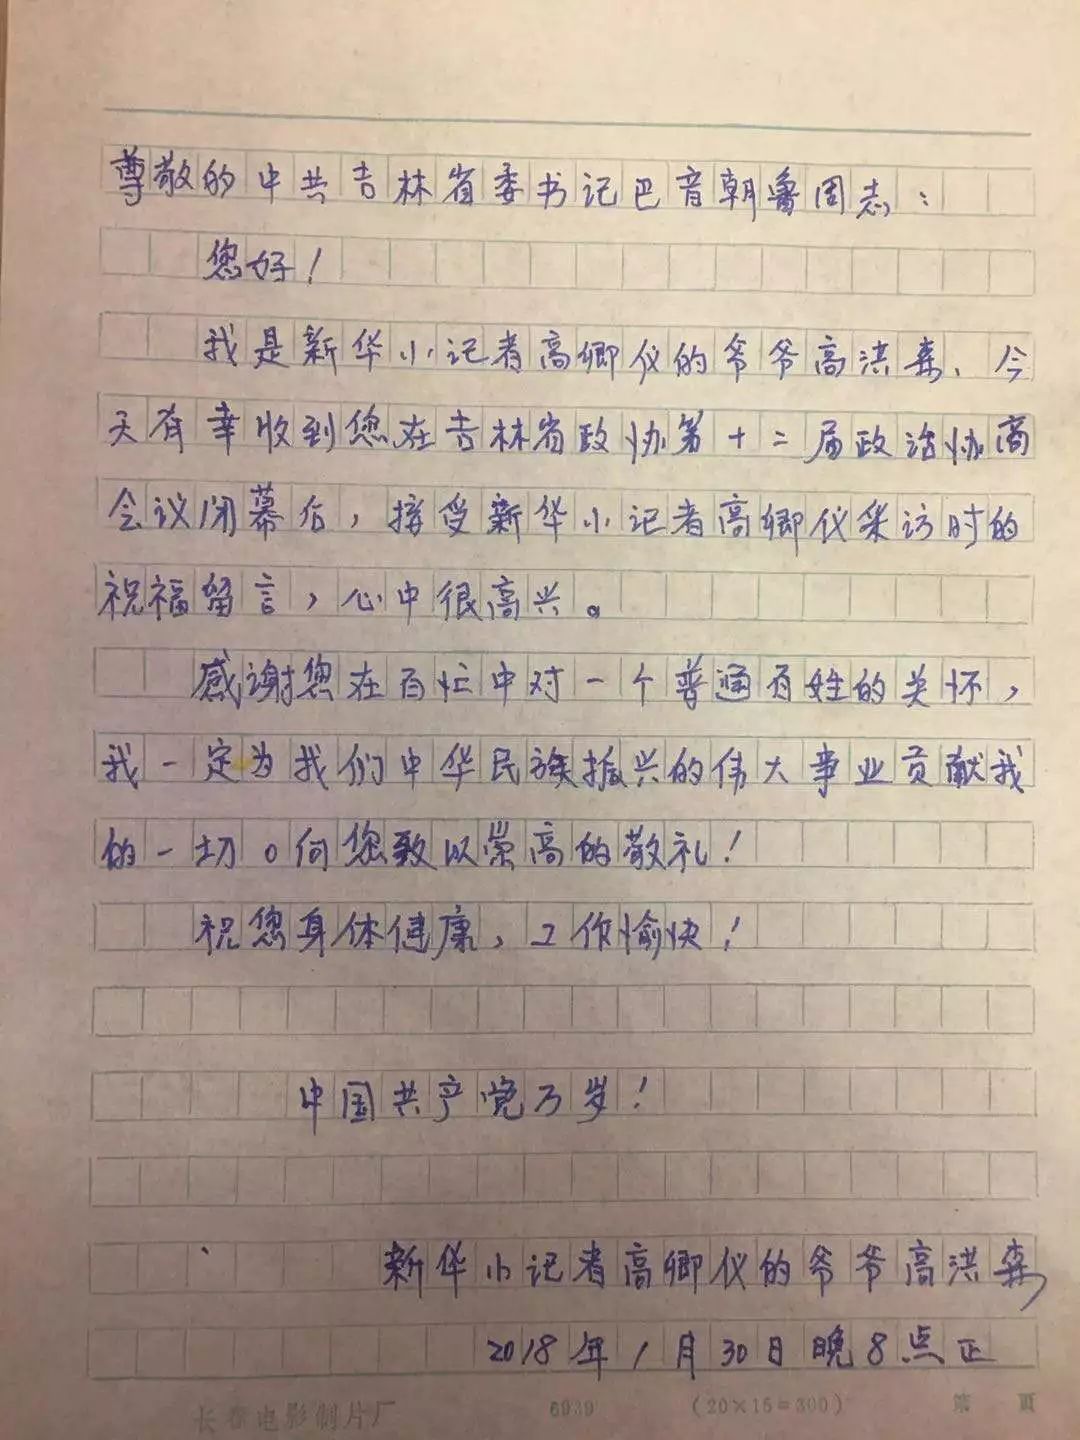 巴音朝鲁为新华小记者写下祝福语 她的爷爷看后激动